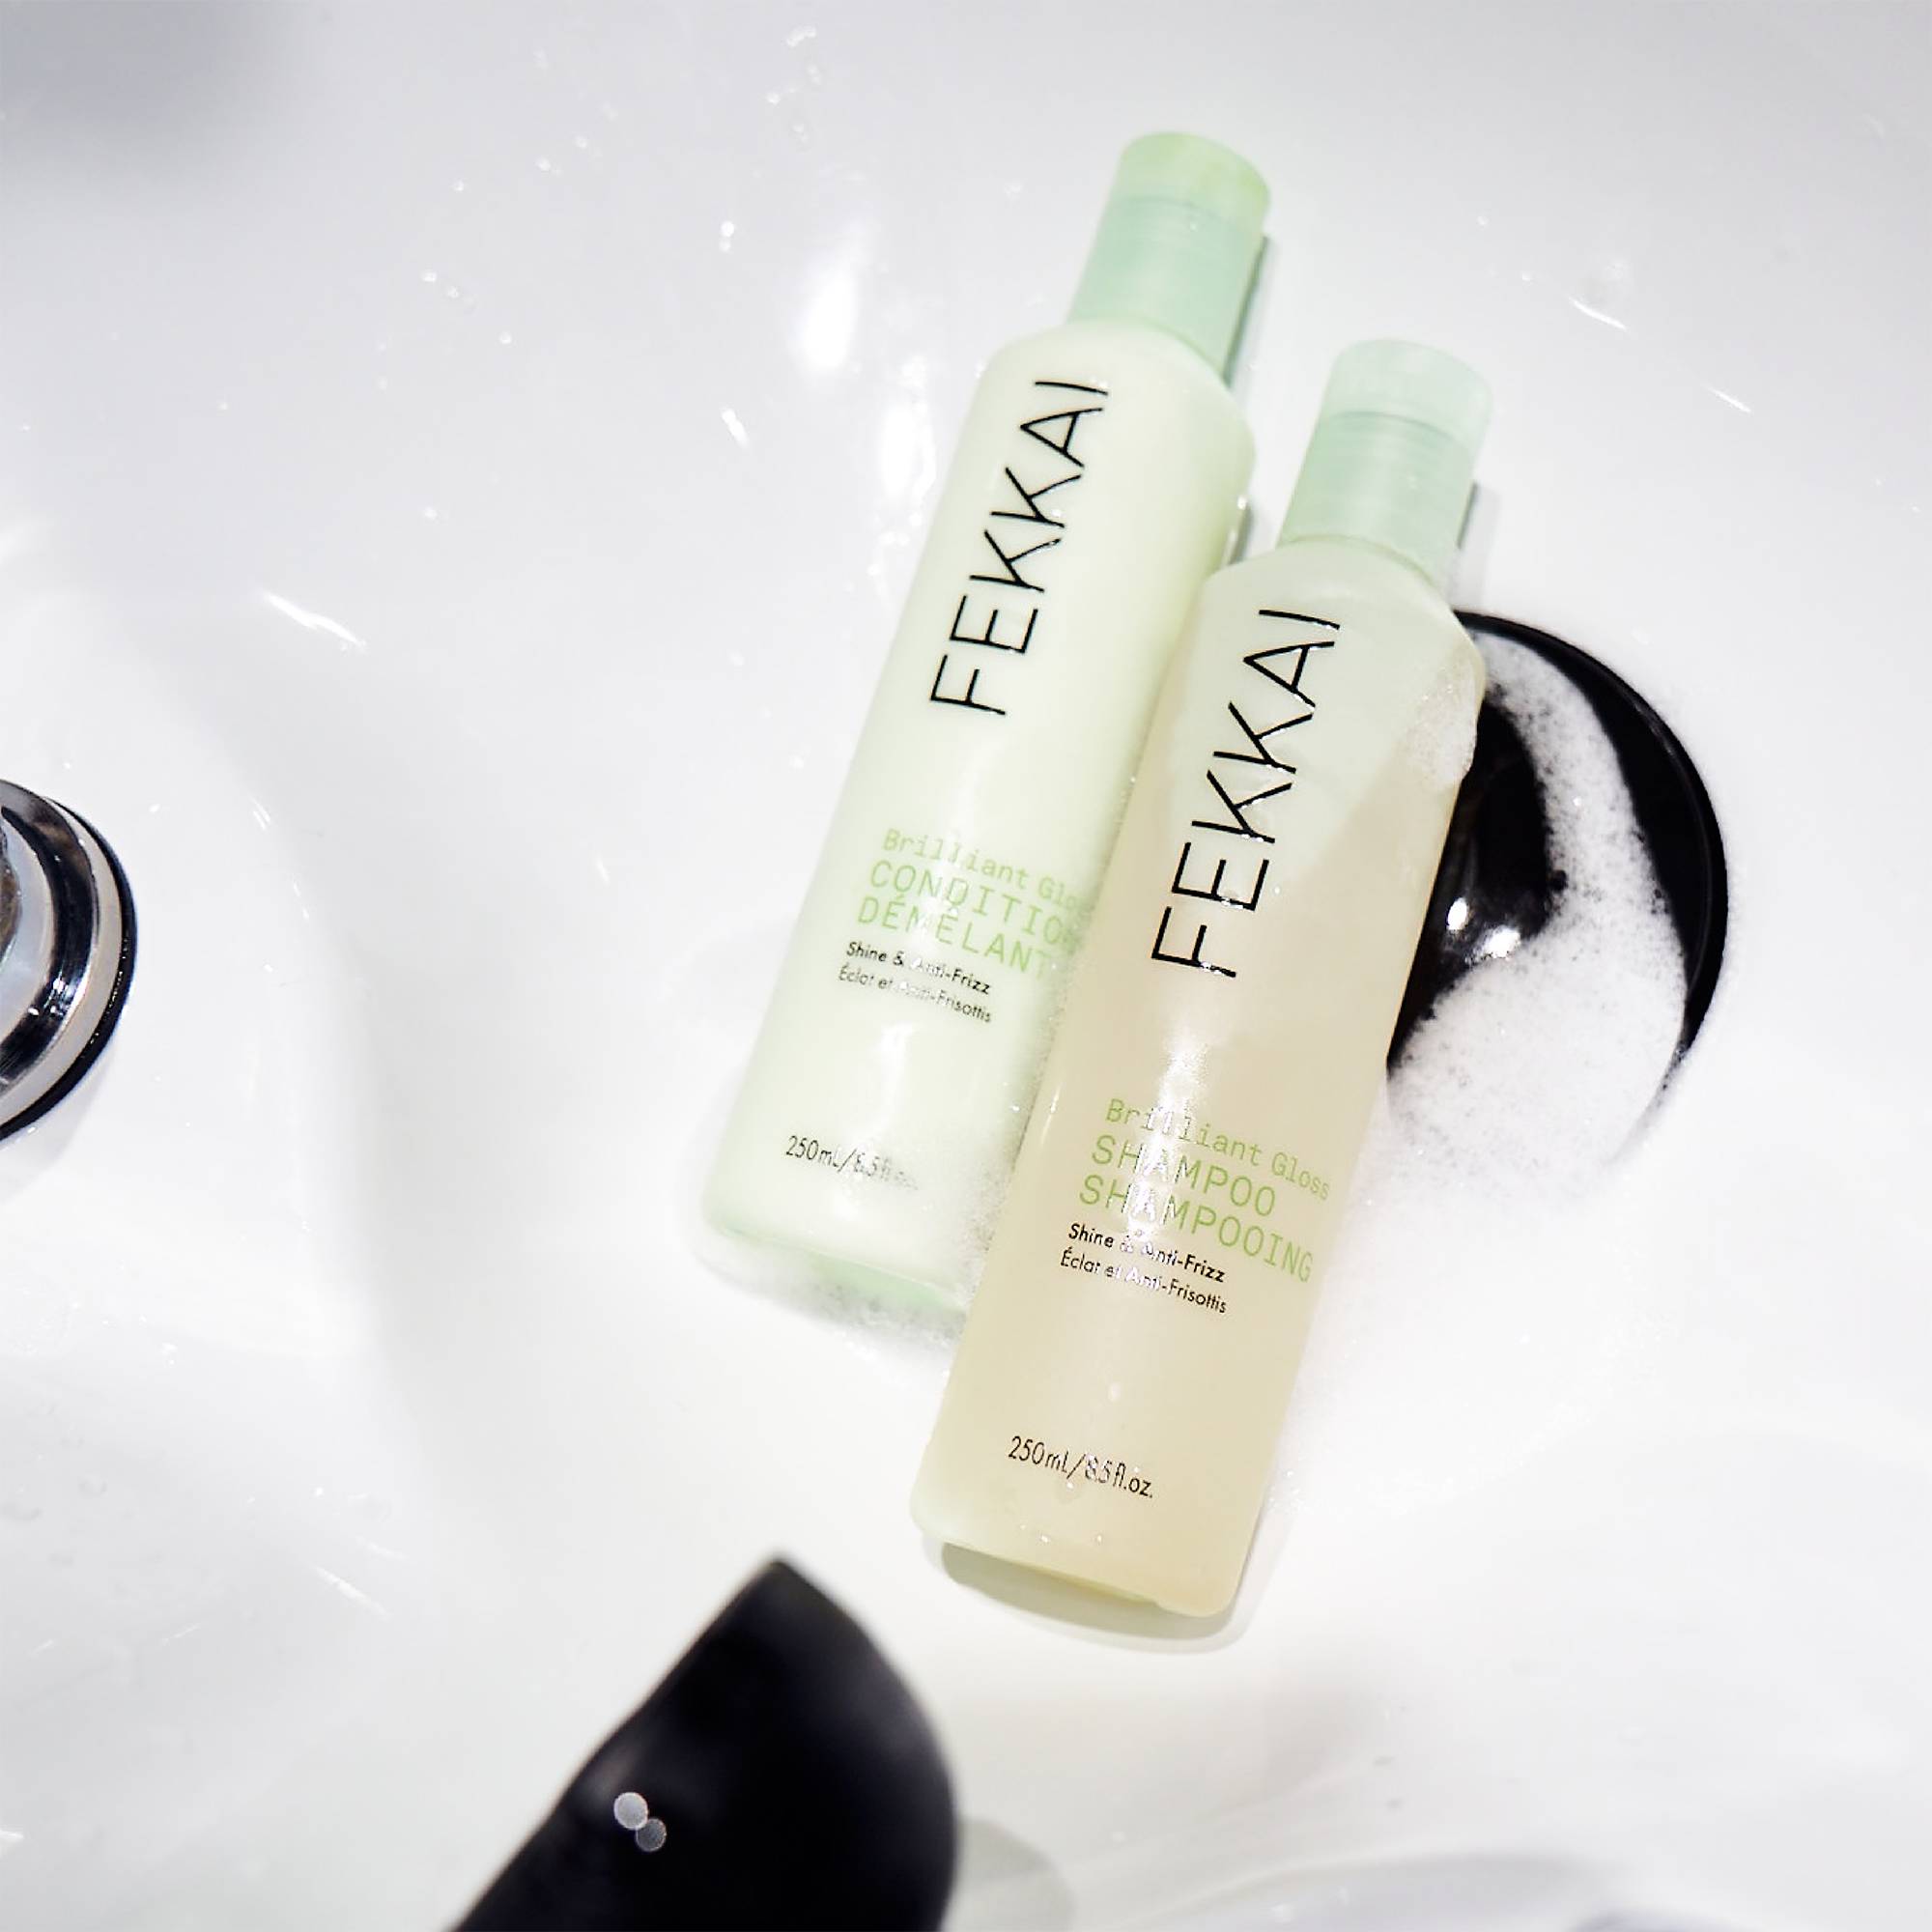 Après-shampoing brillance et anti-frisottis Brilliant Gloss de la marque Fekkai Contenance 250ml - 7